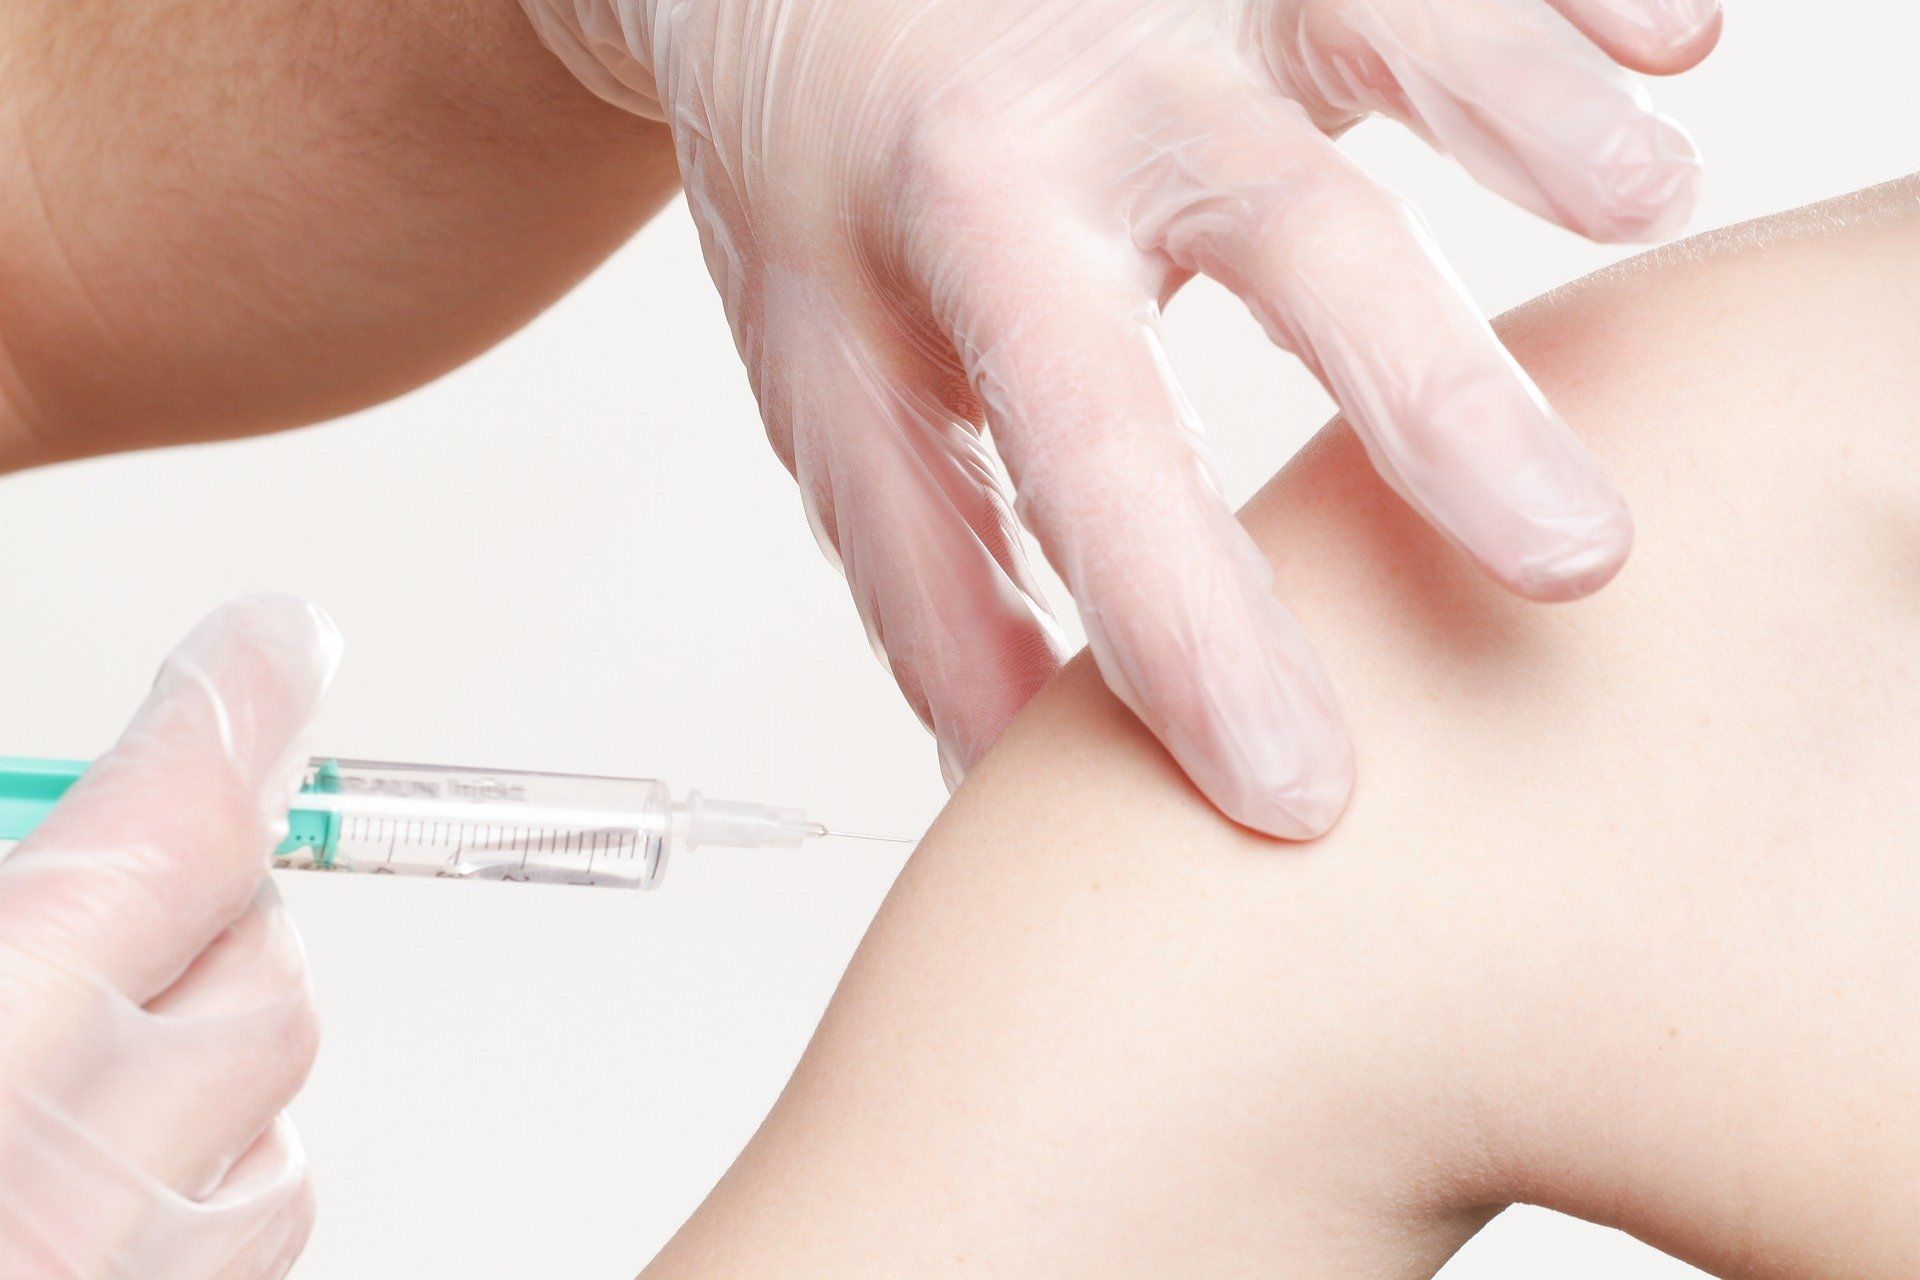 El ensayo clínico de fase III de la vacuna de Janssen contra la covid-19 se realizará en nueve centros hospitalarios españoles / Foto: Pixabay